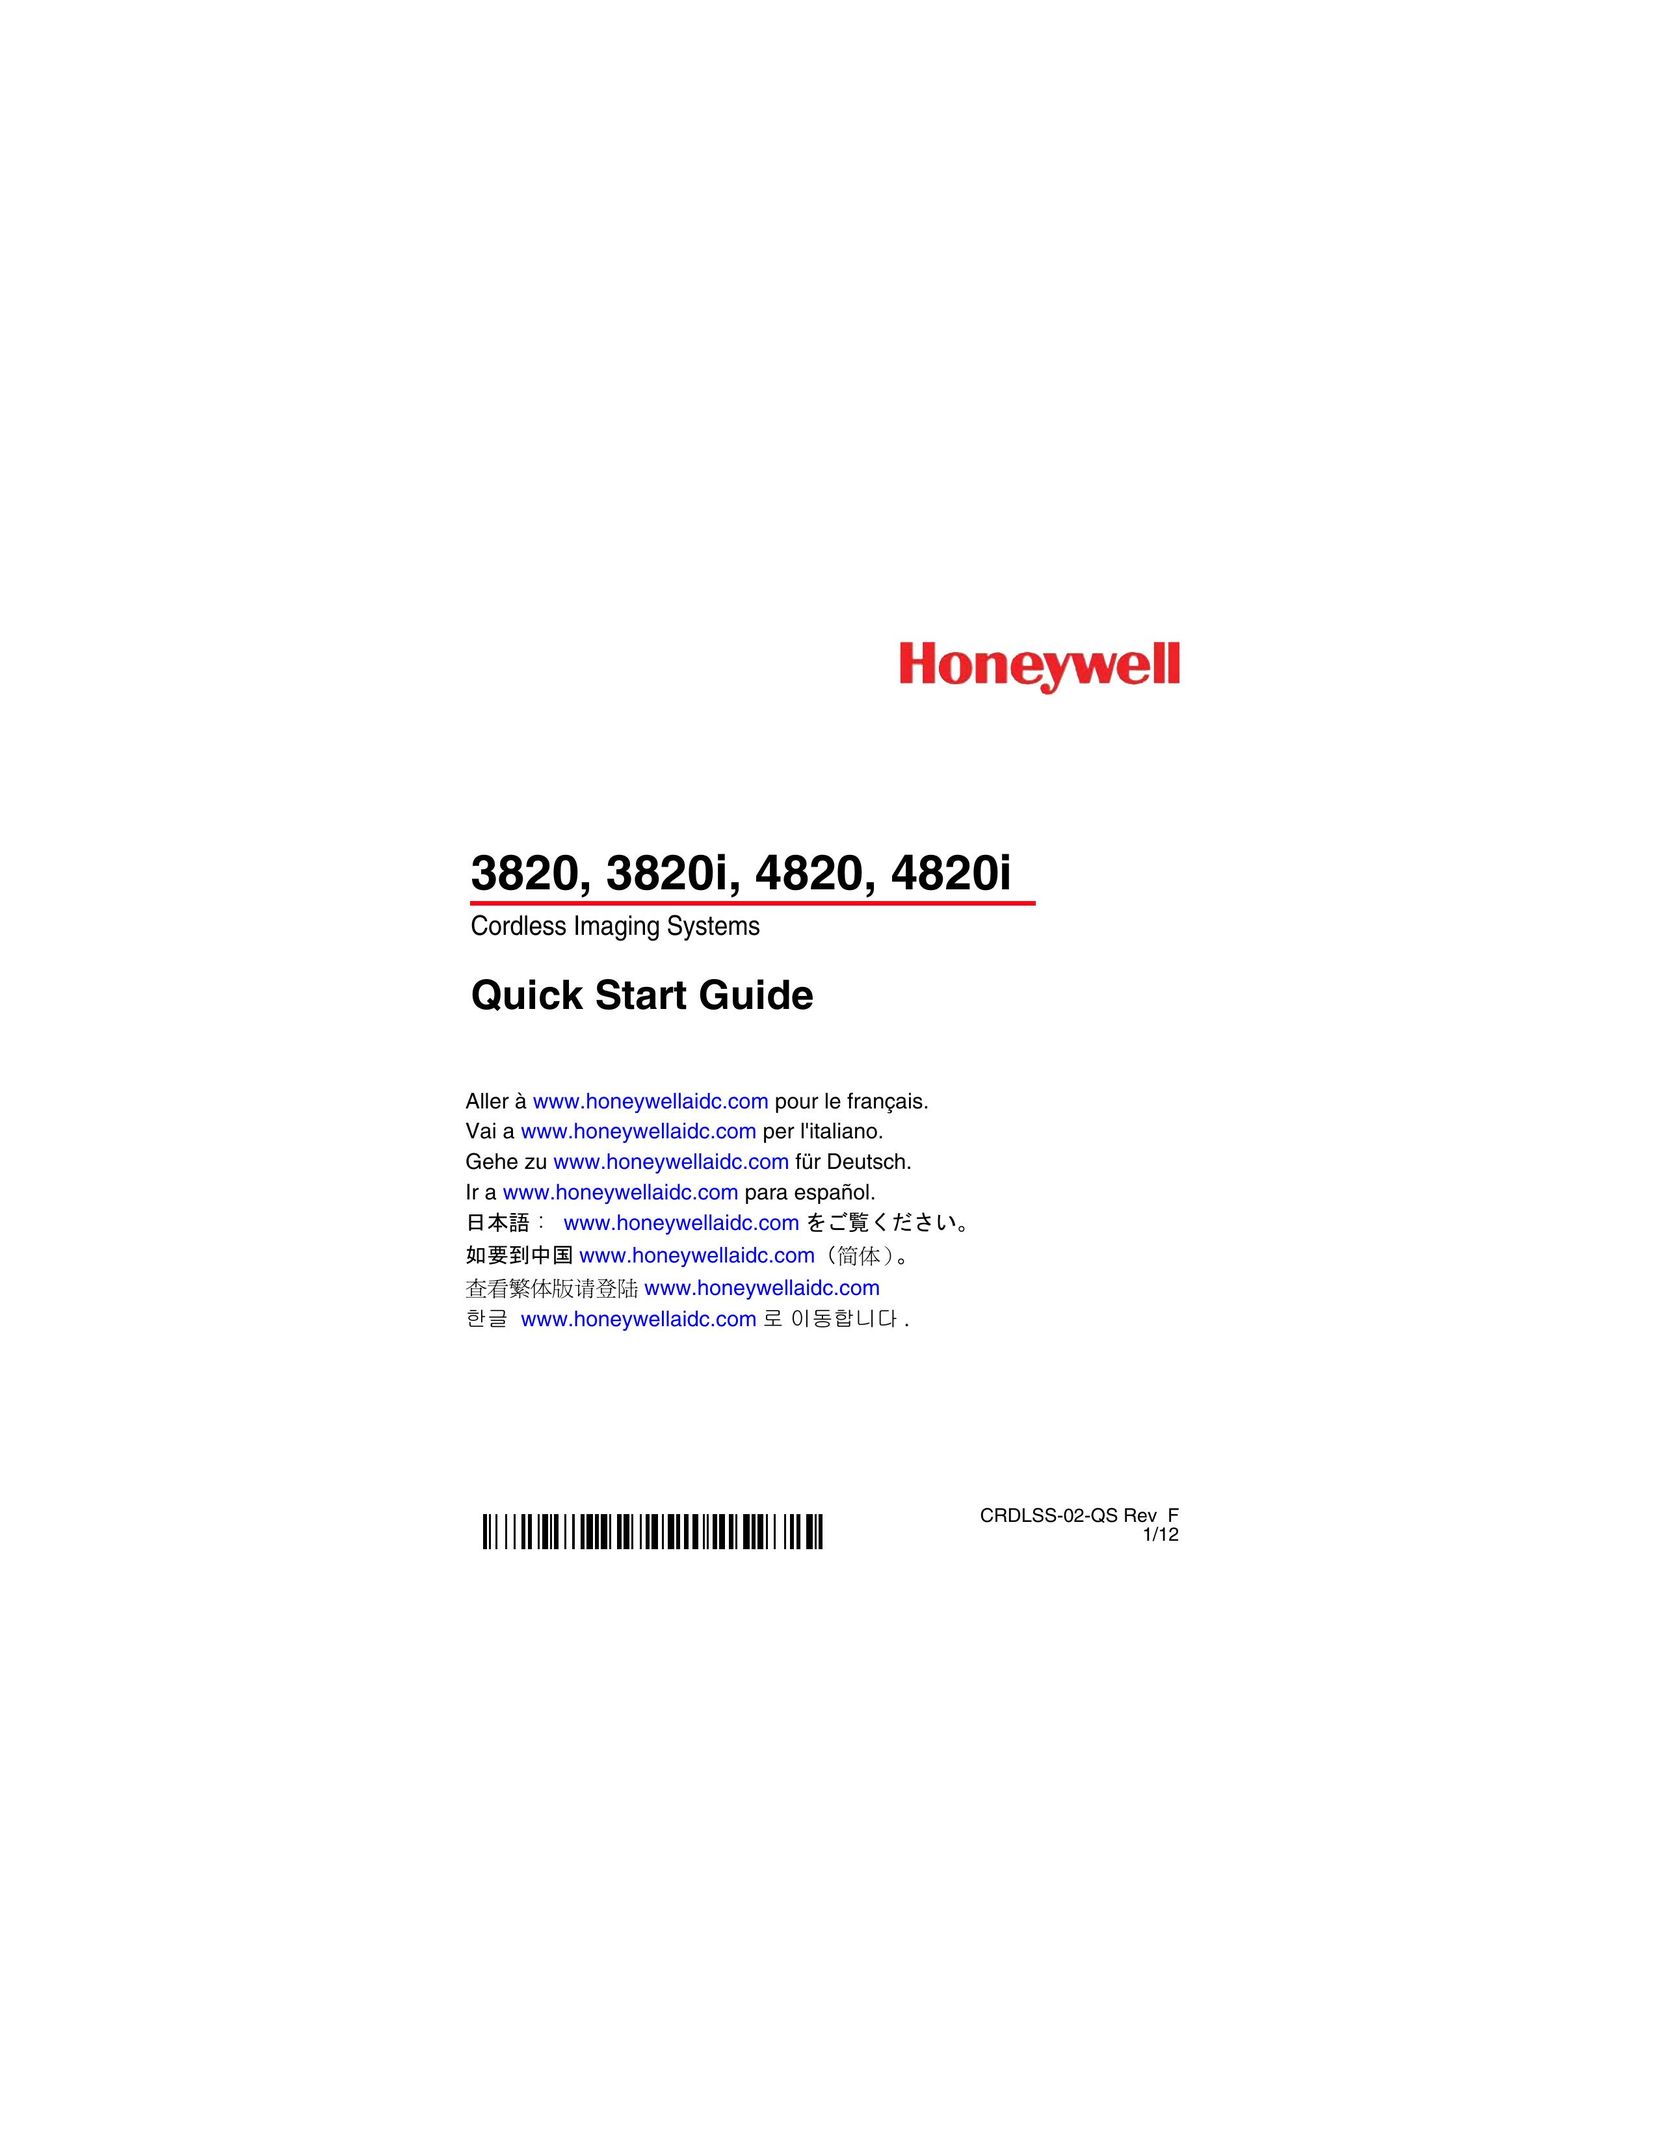 Honeywell 4820 Scanner User Manual